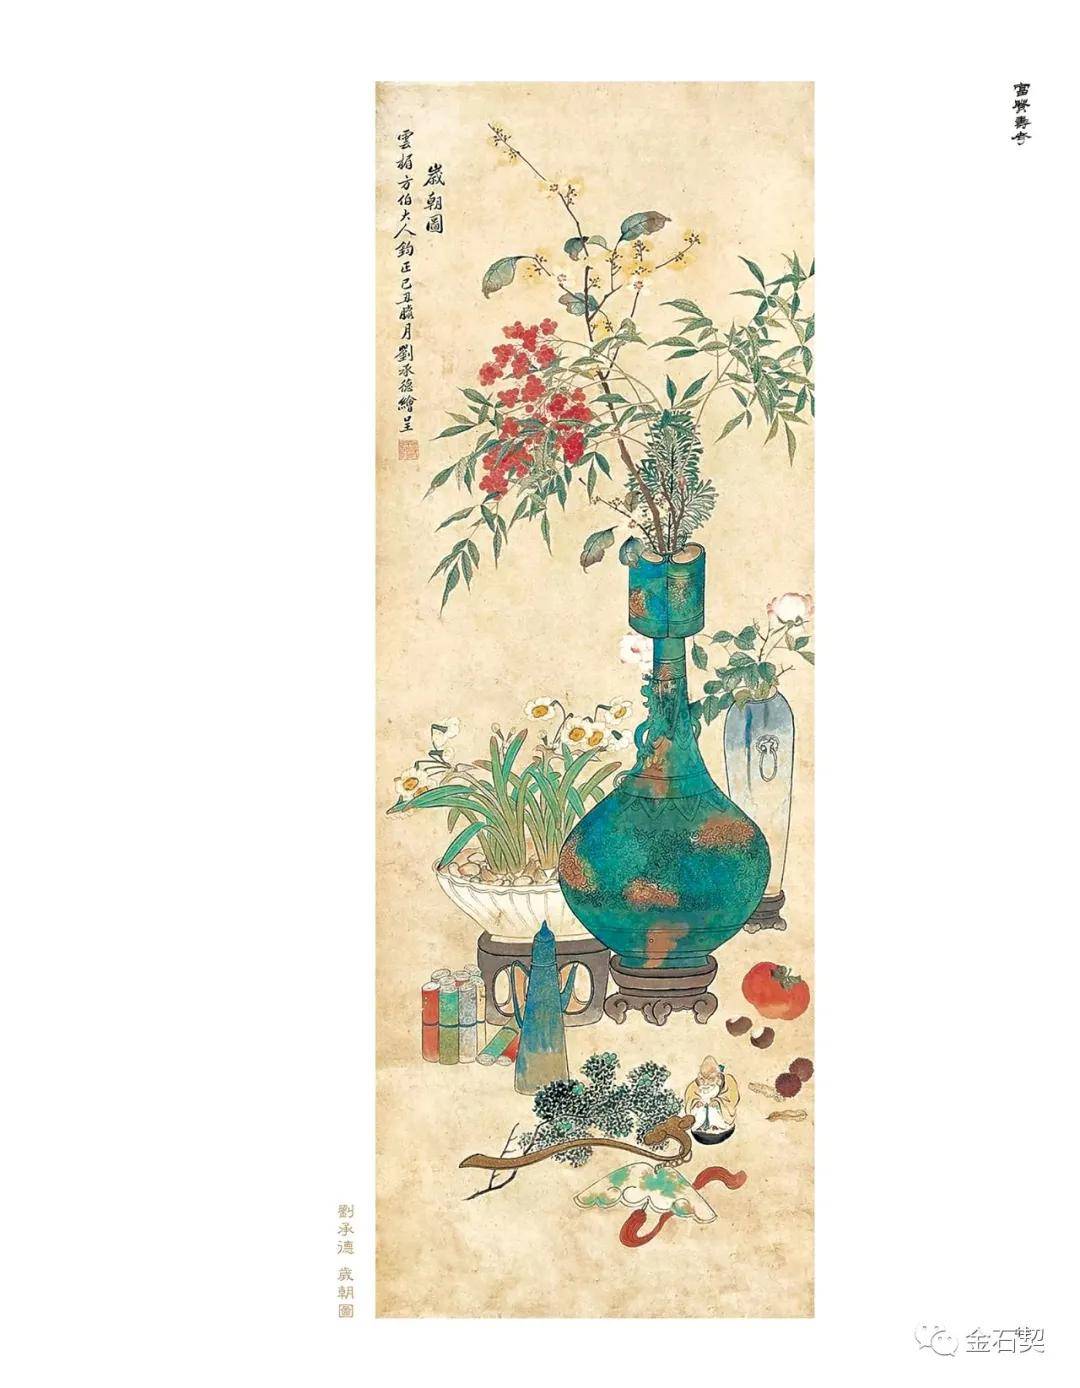 全国首部金石博古画专著《富贵寿考—中国金石博古画图说》出版